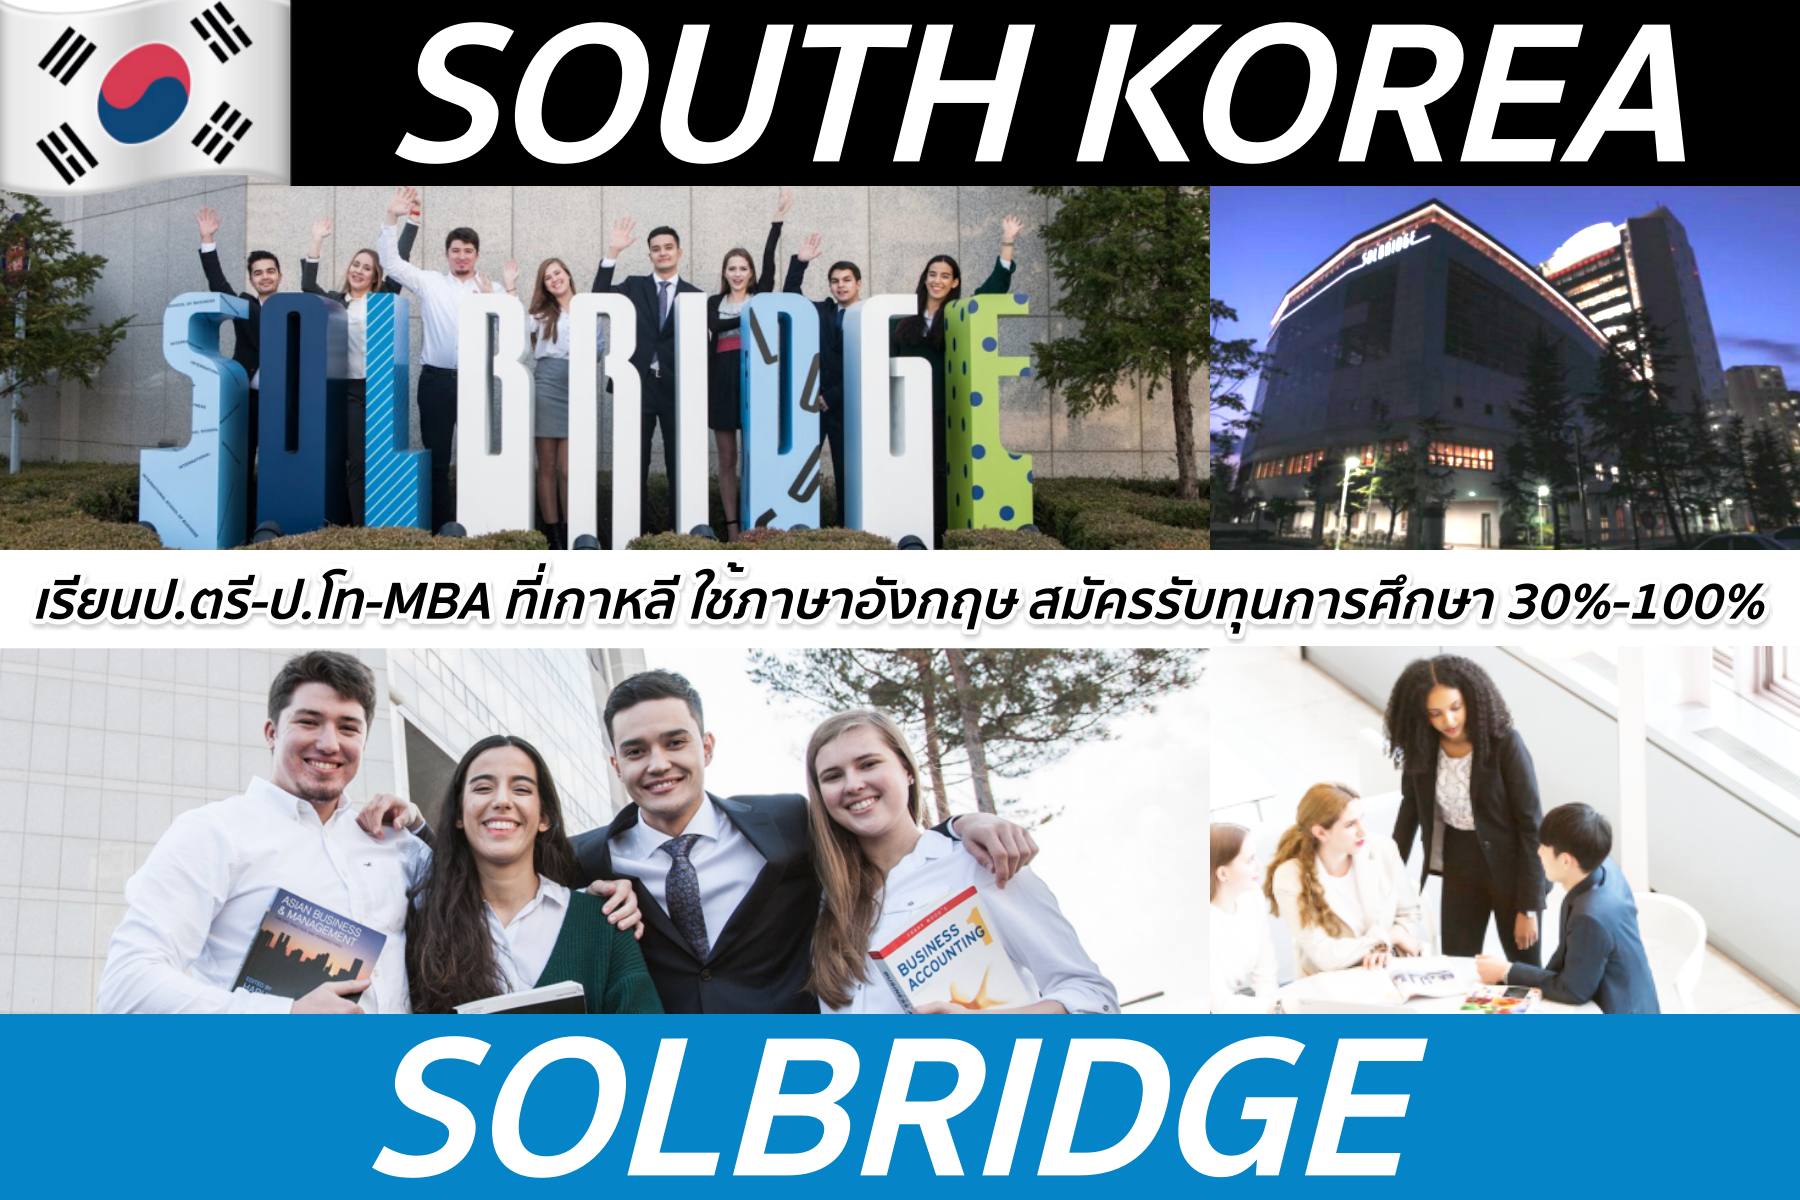 ป.ตรี-ป.โทสาขาบริหารธุรกิจที่ Solbridge, South Korea *มีทุนการศึกษา 30-100%*